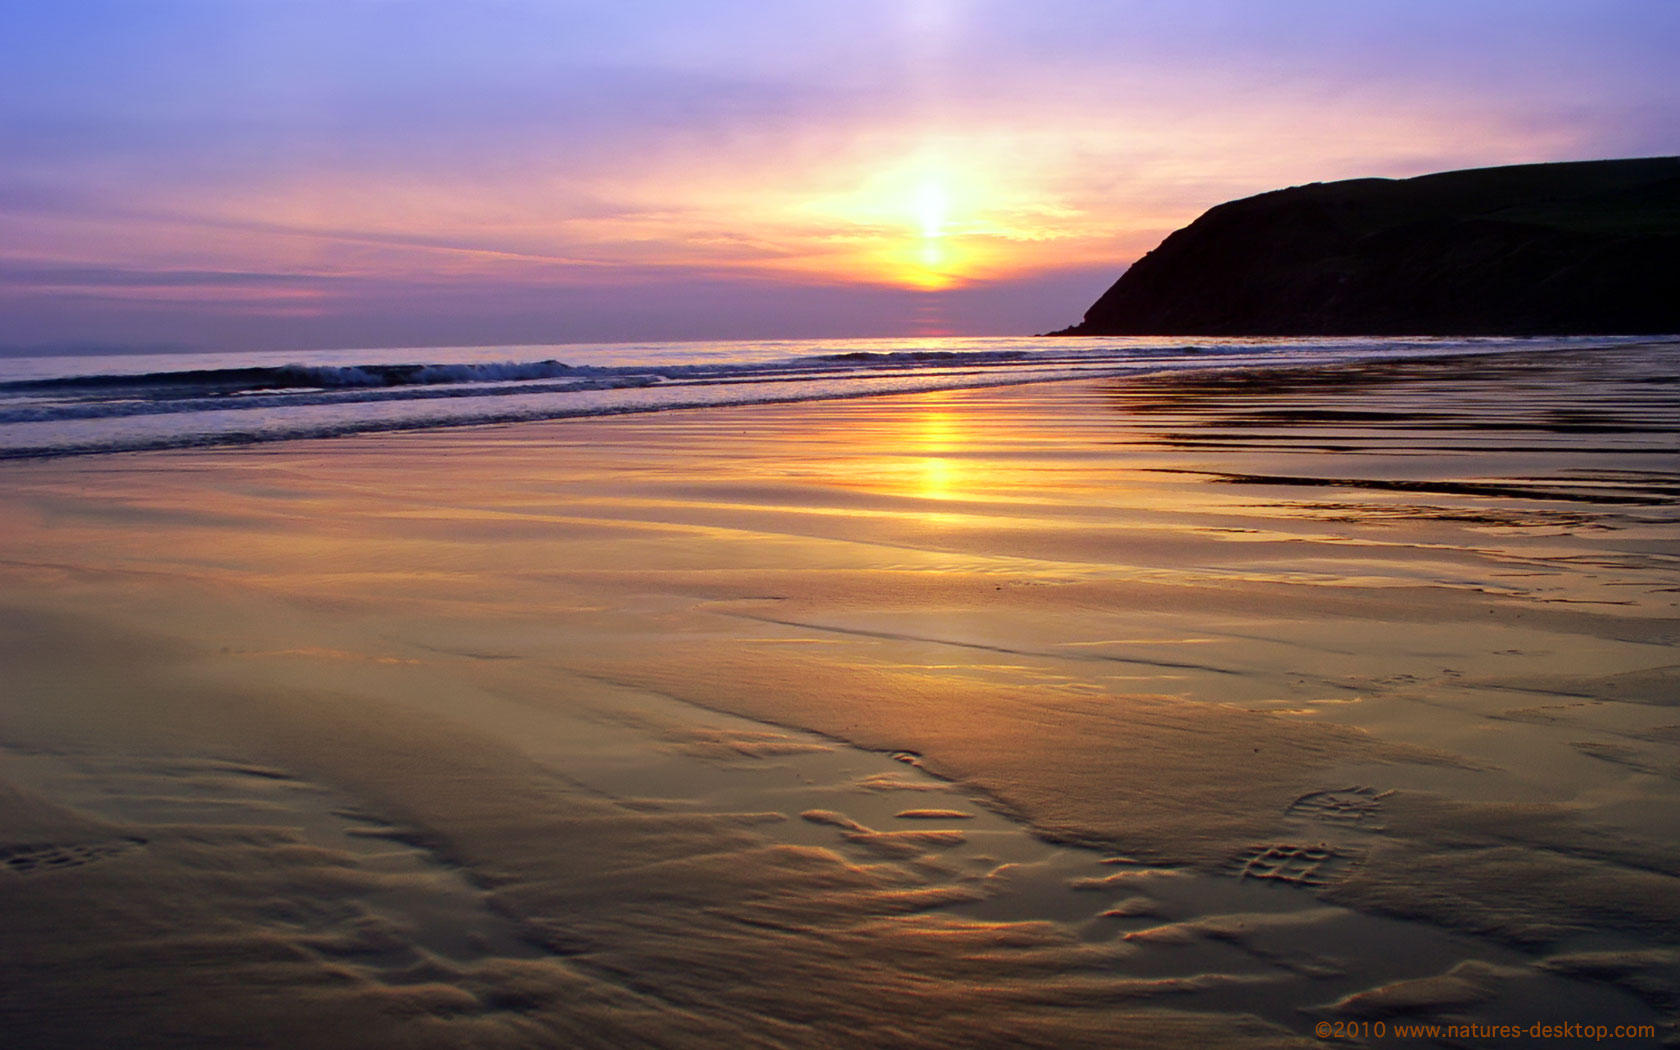 Beach Sunset Backgrounds For Desktop Wallpaper Free Best Hd